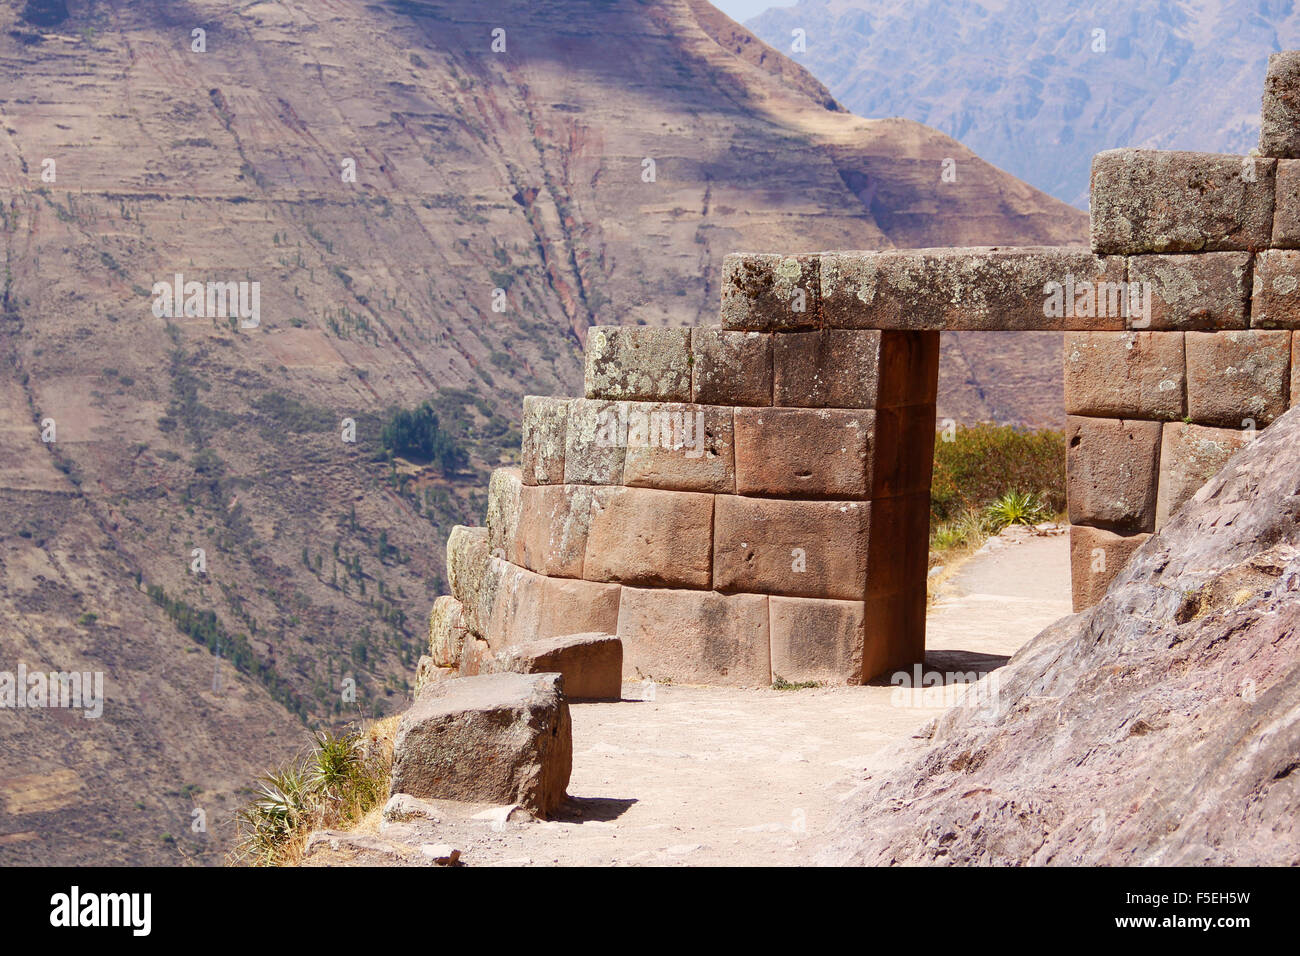 Gate of Incan citadel, Pisac, Cusco, Peru Stock Photo